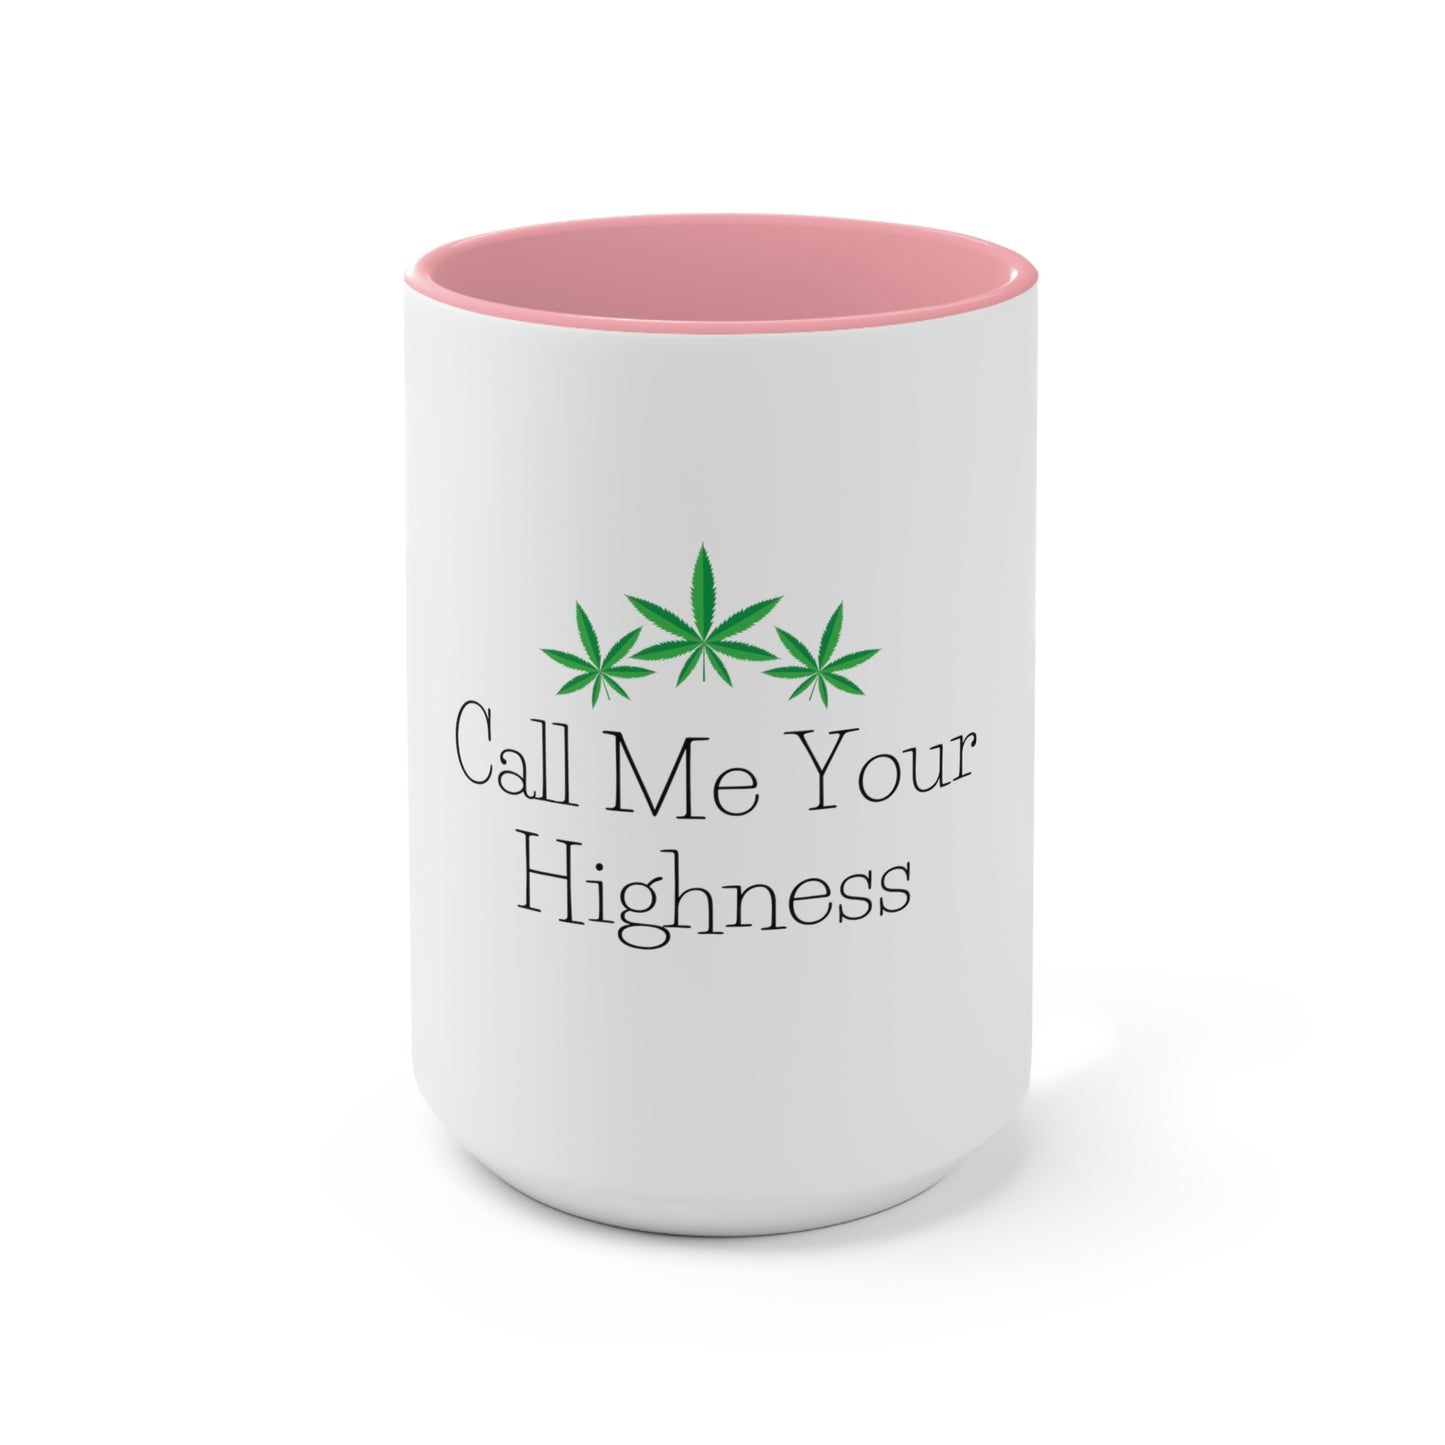 Call Me Your Highness Coffee Mug.